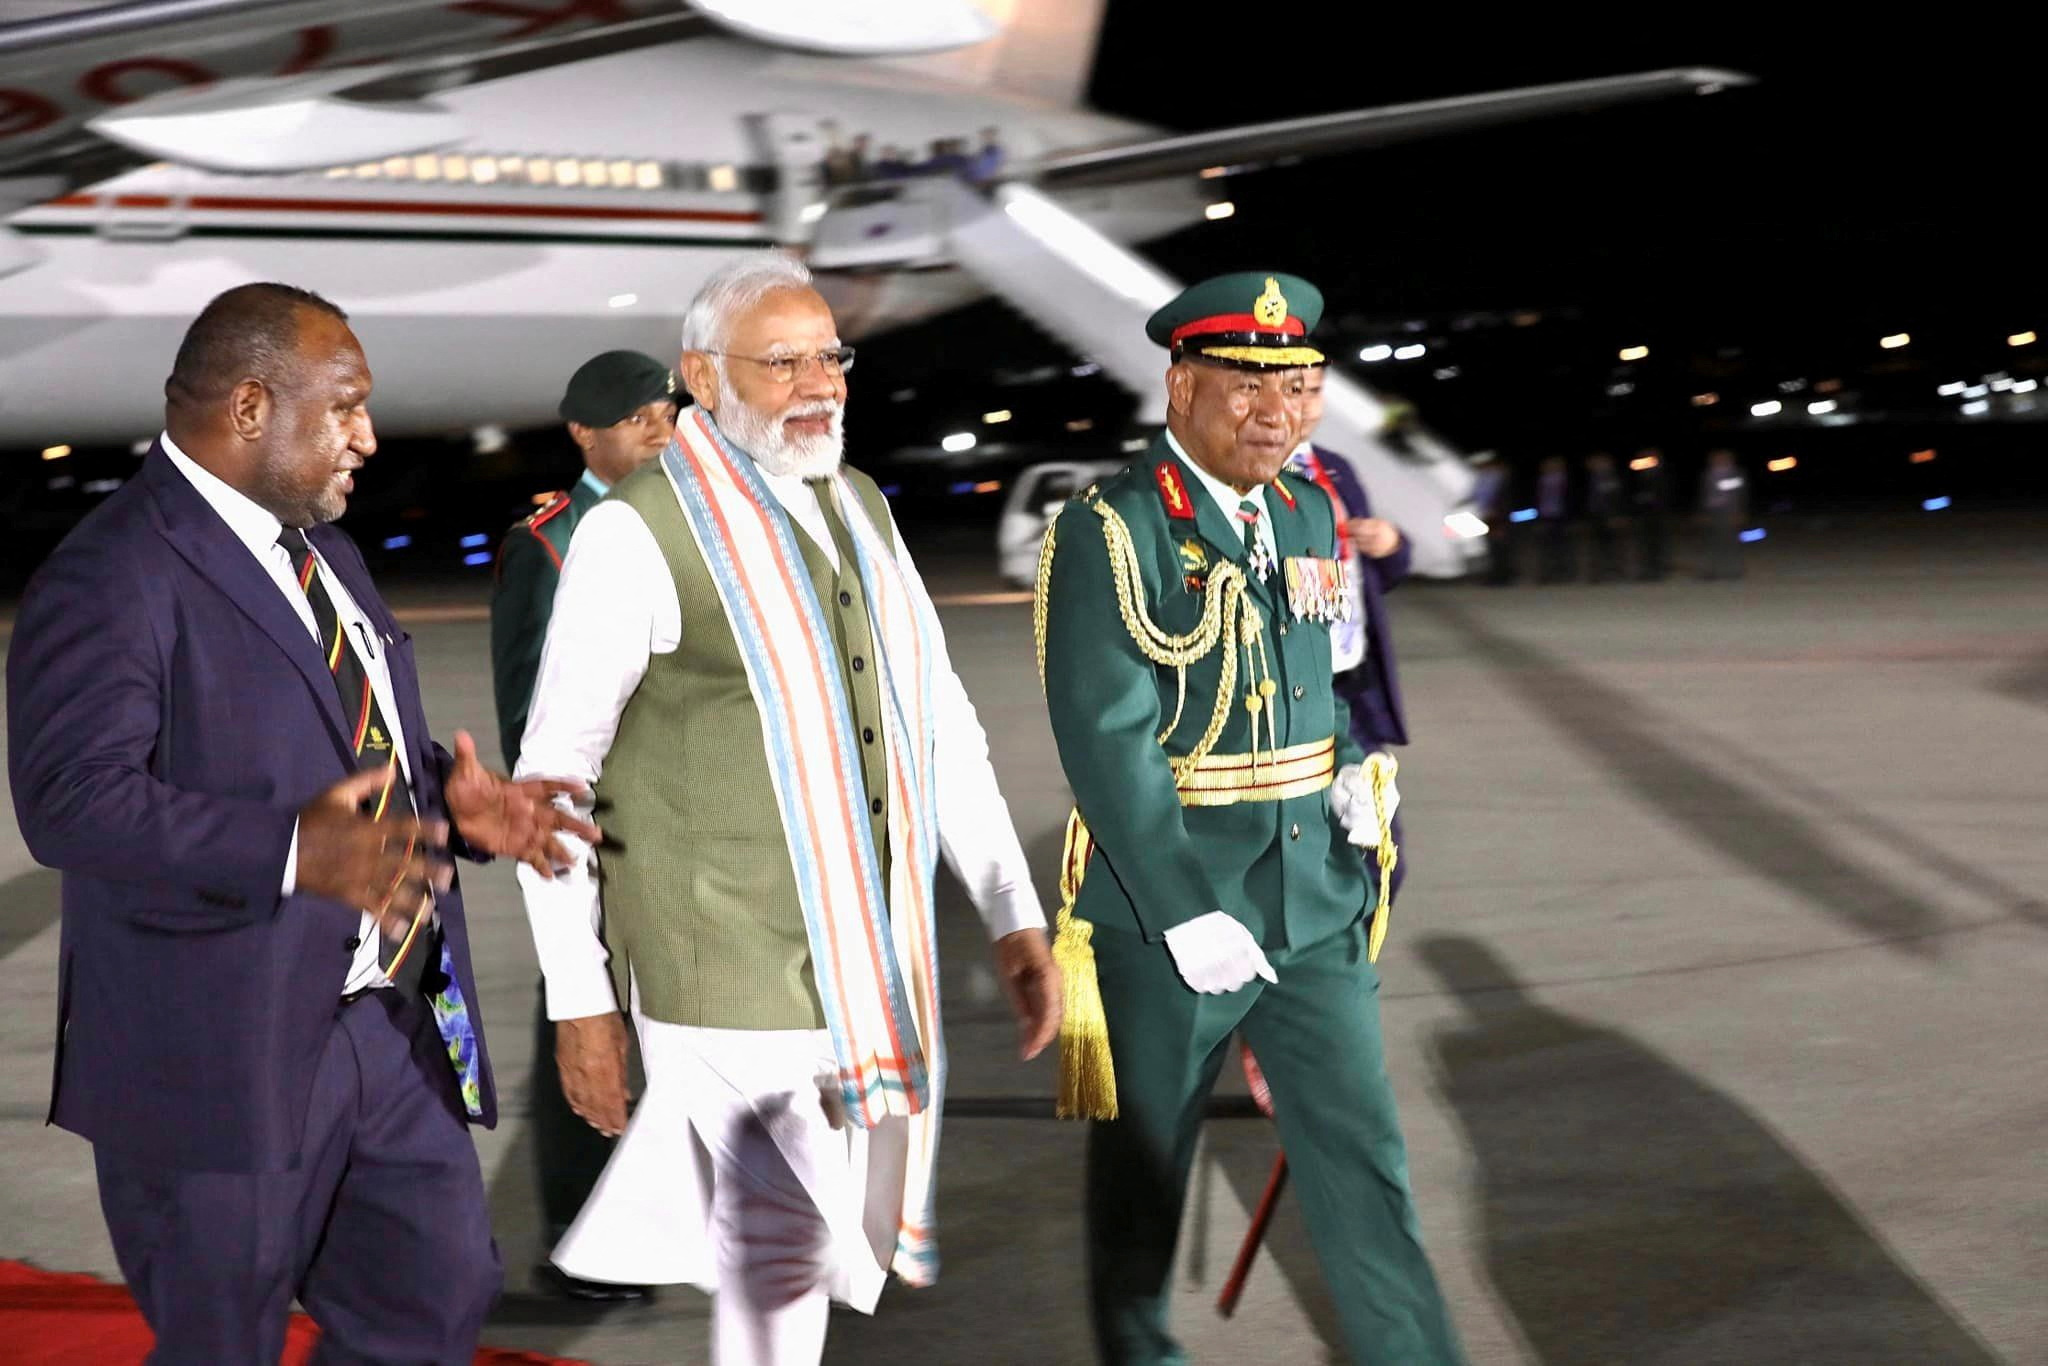 पापुआ न्यू गिनी के जैक्सन अंतरराष्ट्रीय हवाई अड्डे पर पापुआ न्यू गिनी के प्रधान मंत्री मारापे द्वारा भारतीय प्रधान मंत्री मोदी का स्वागत किया गया